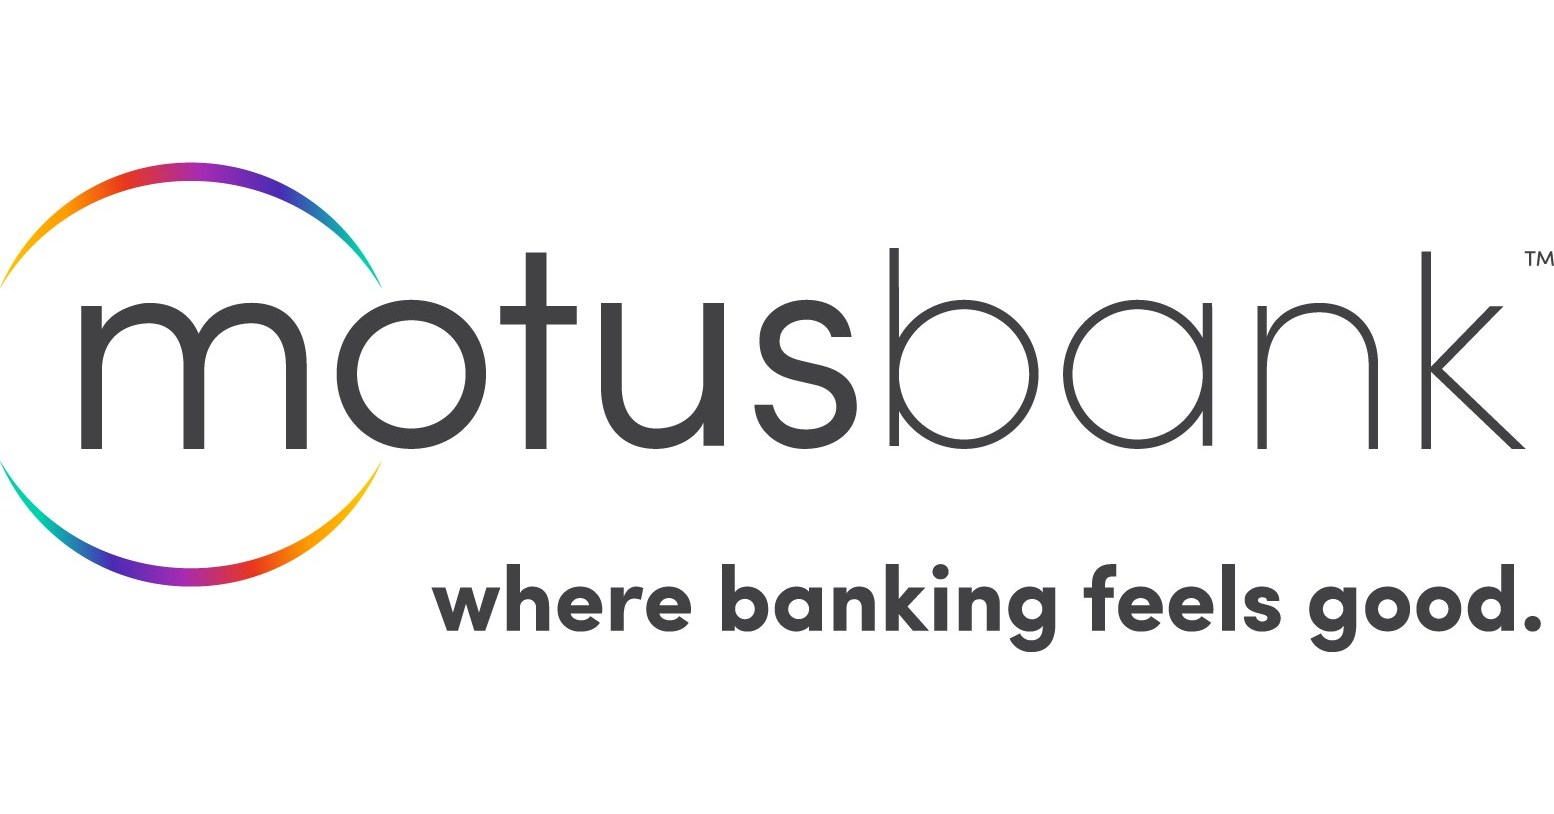 Motusbank logo